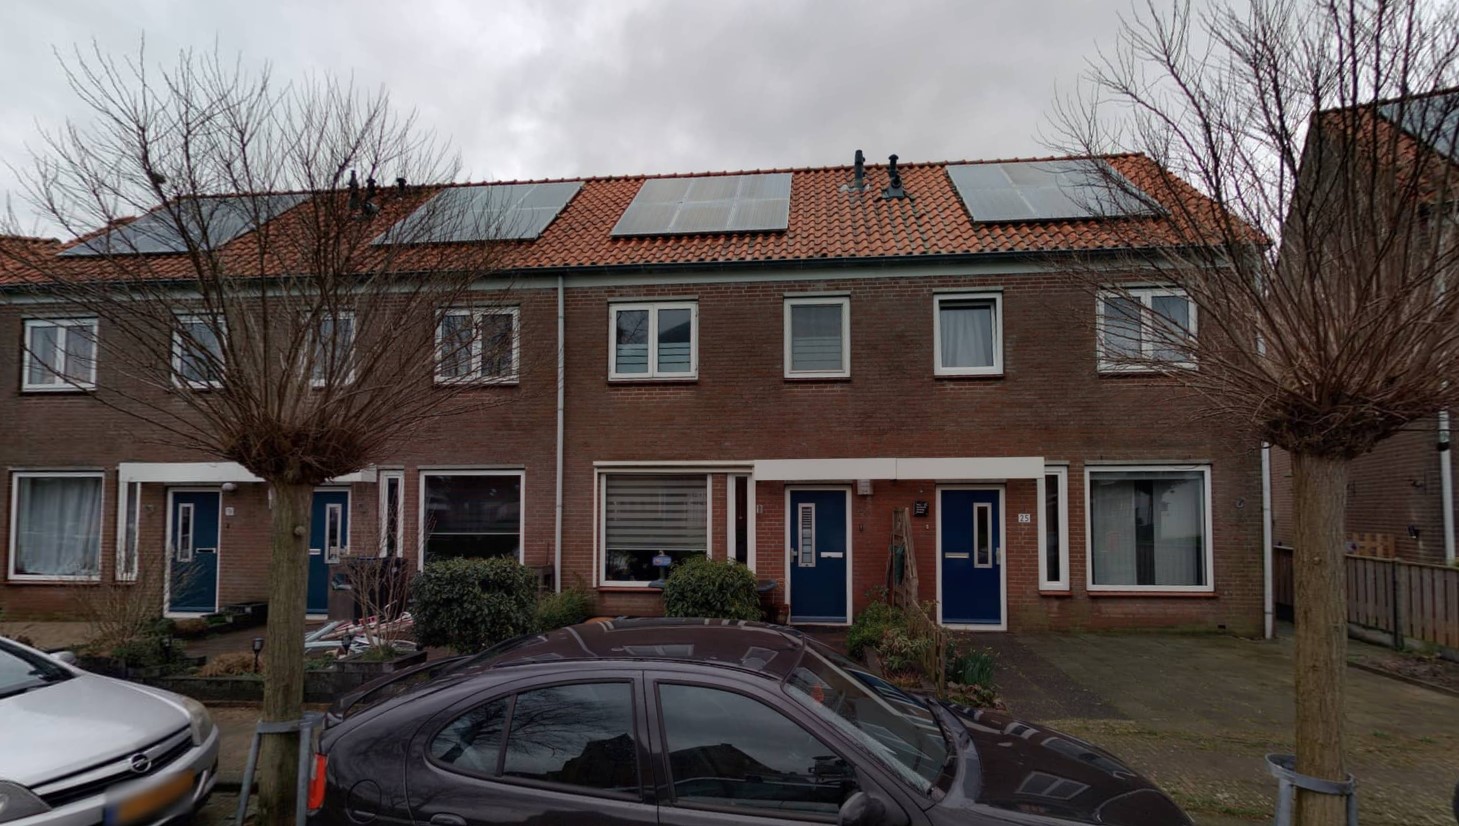 Kerkplein 23, 4693 BX Poortvliet, Nederland